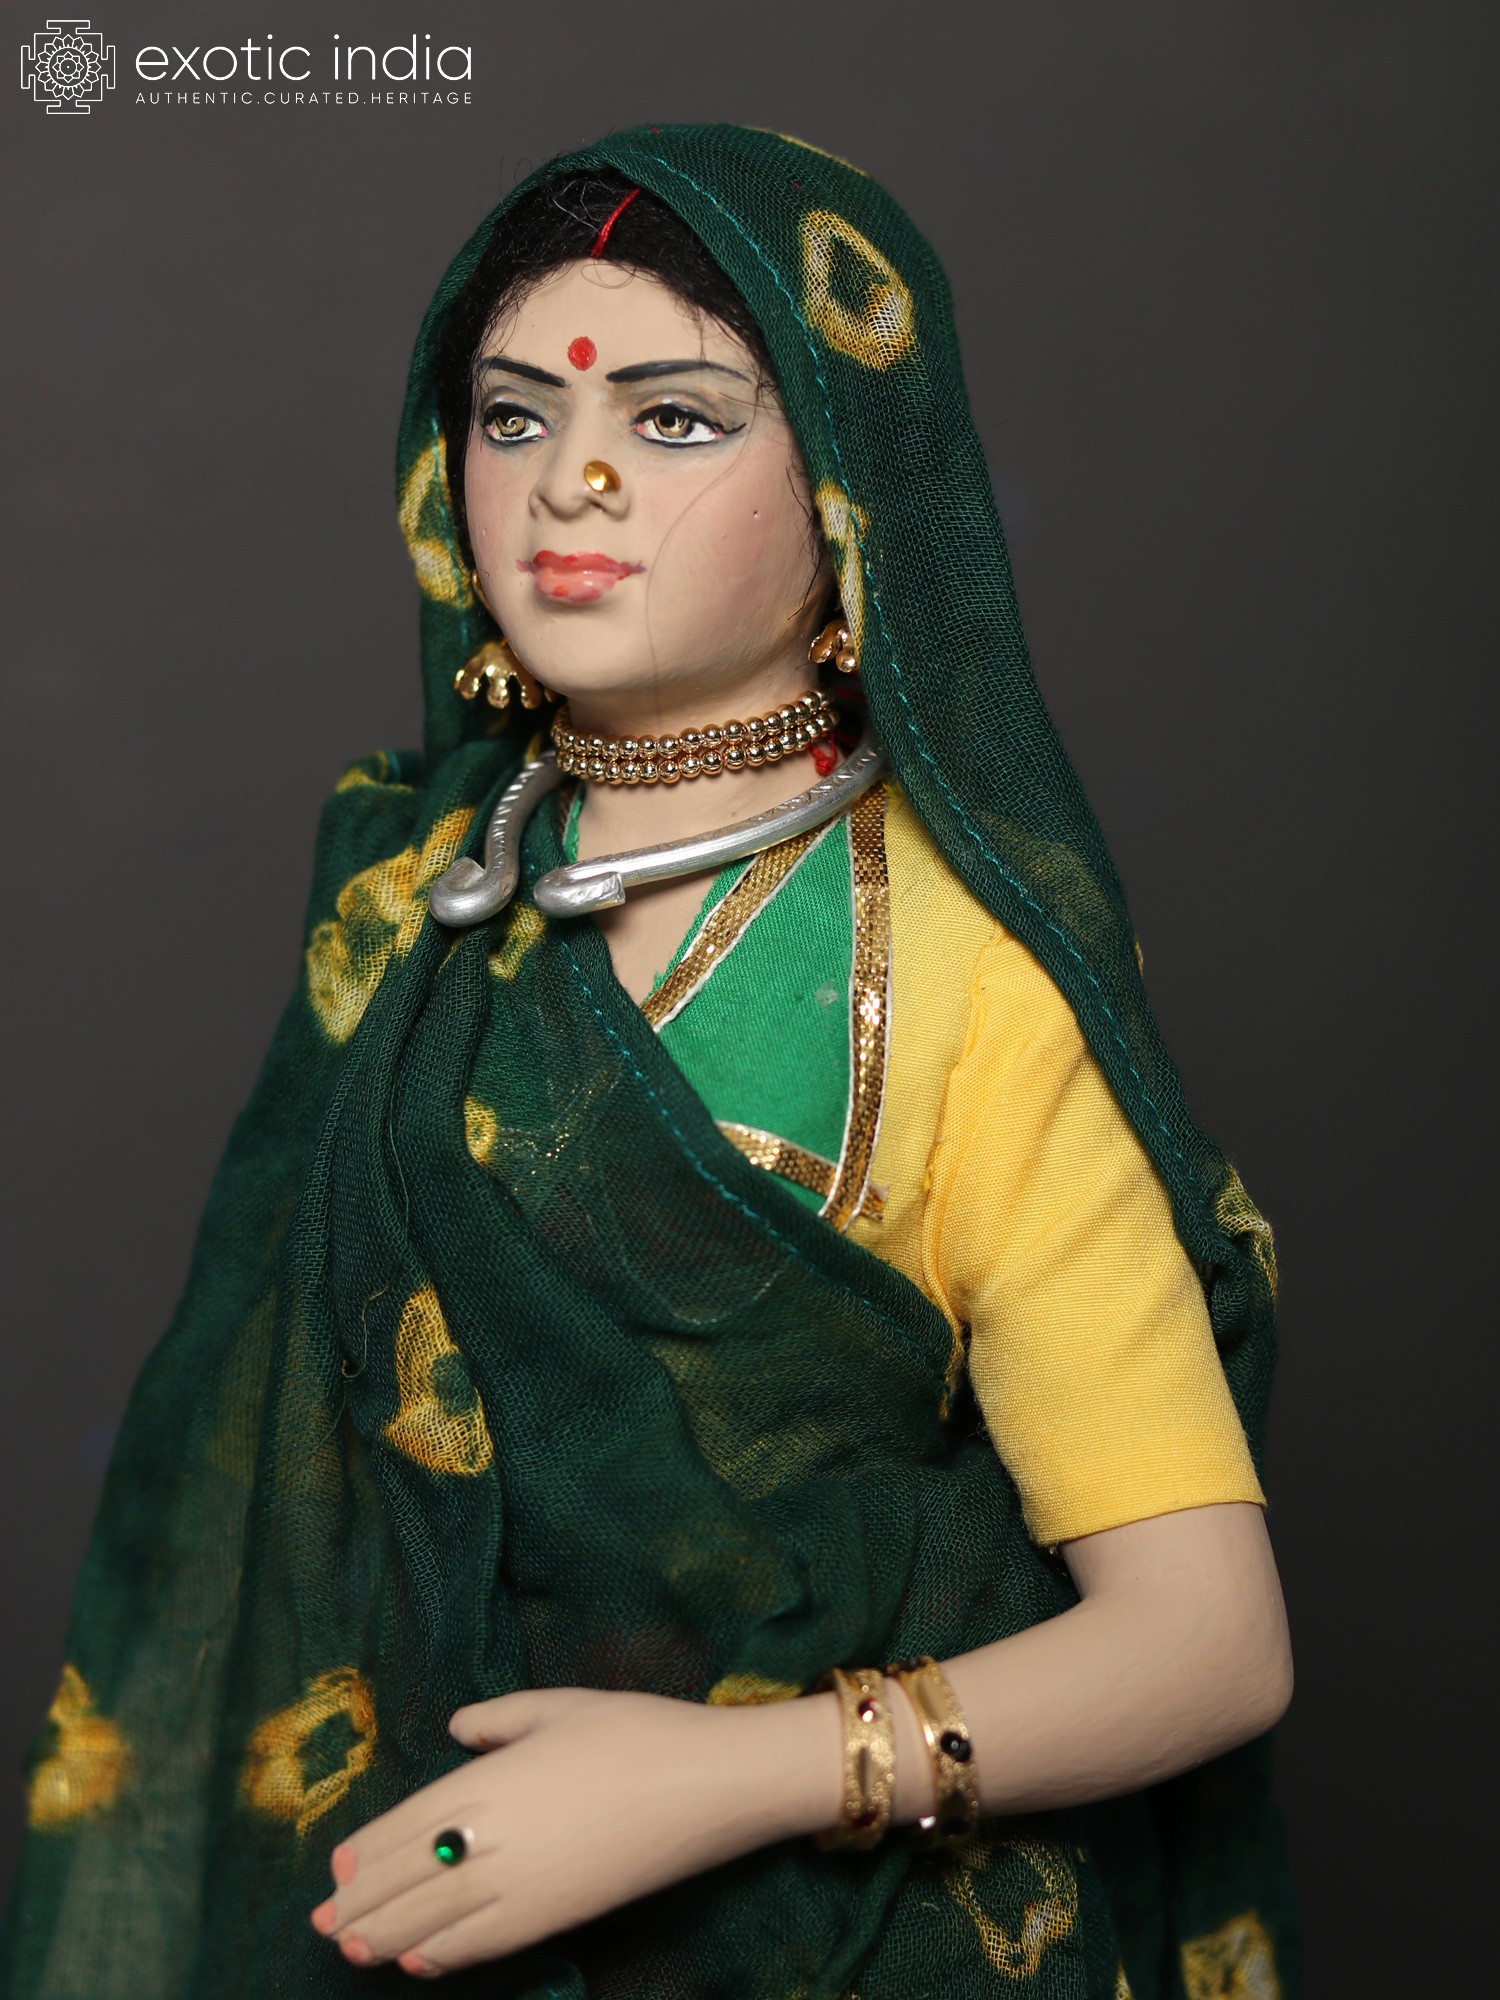 Gujarati family in traditional attire - Stock Photo [7933110] - PIXTA